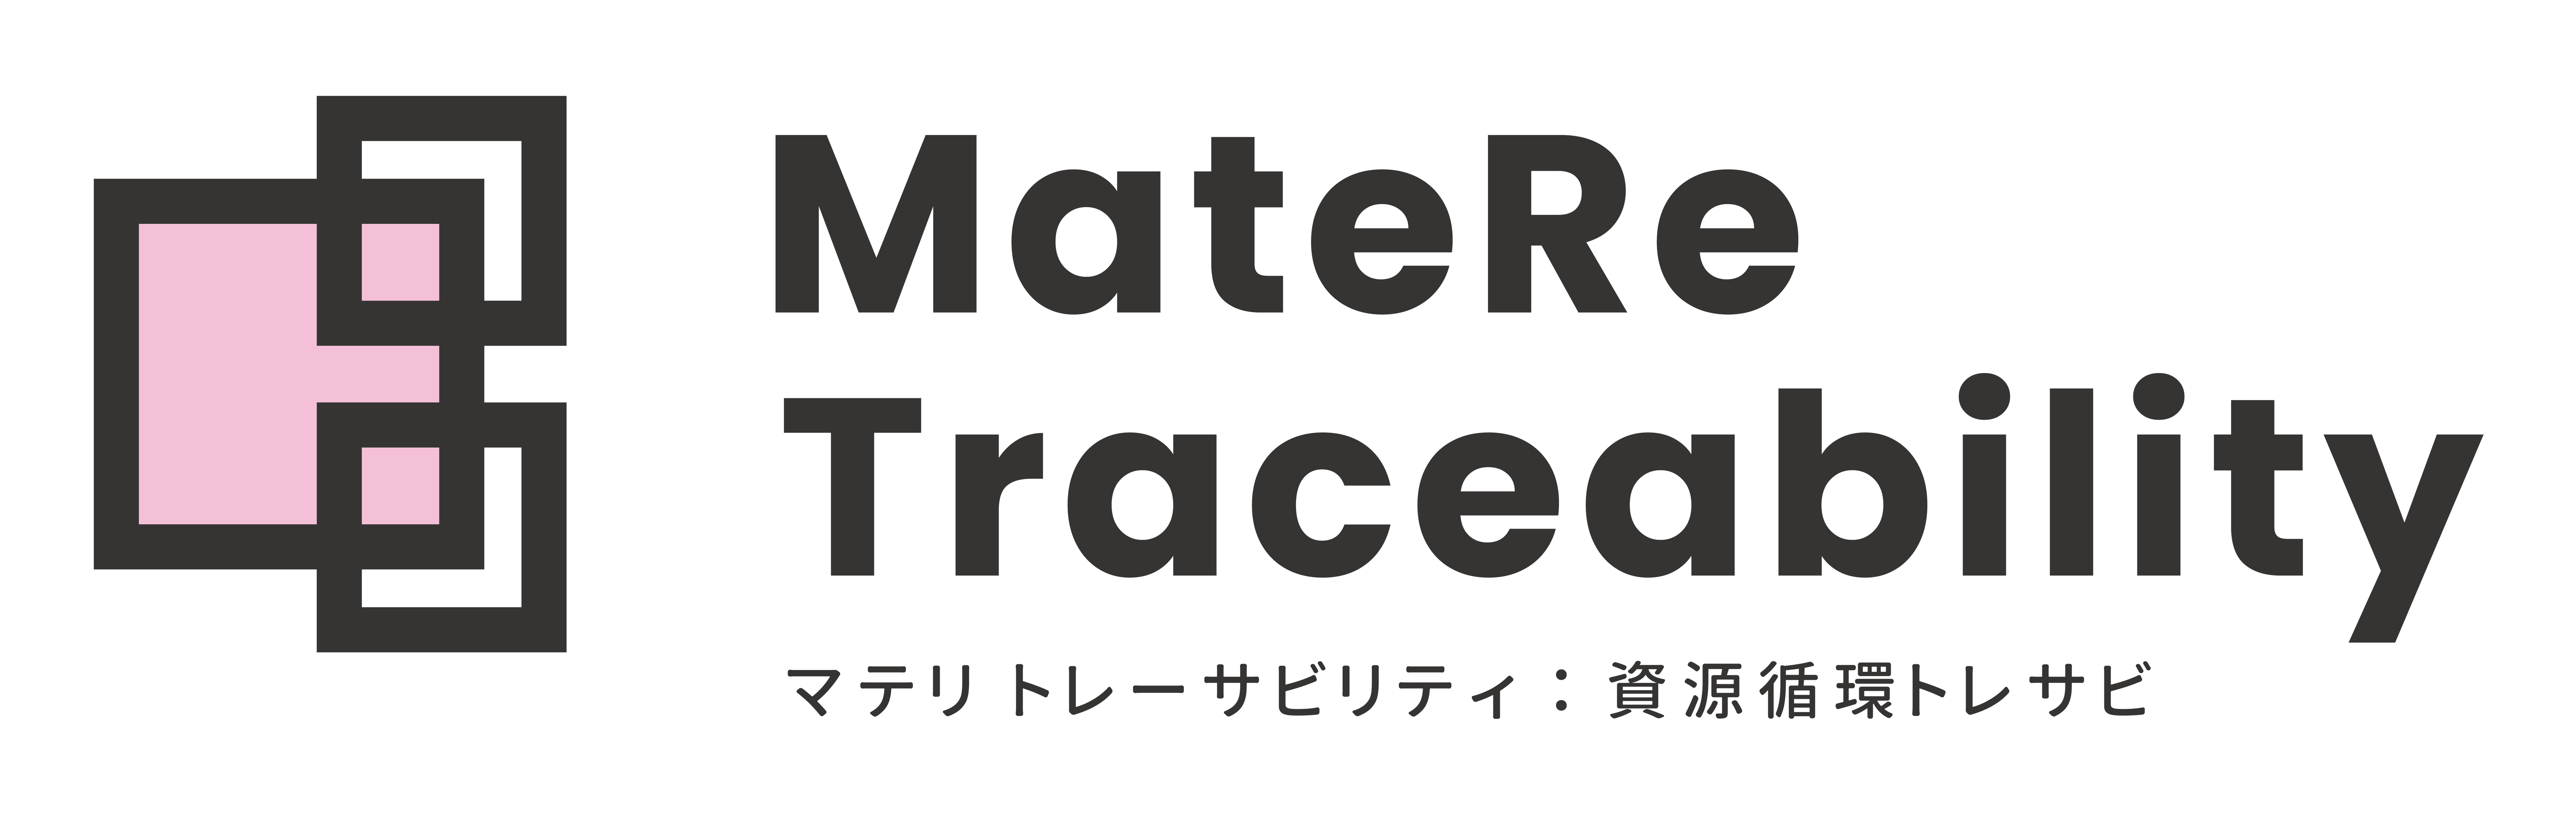 MatereT_logo1